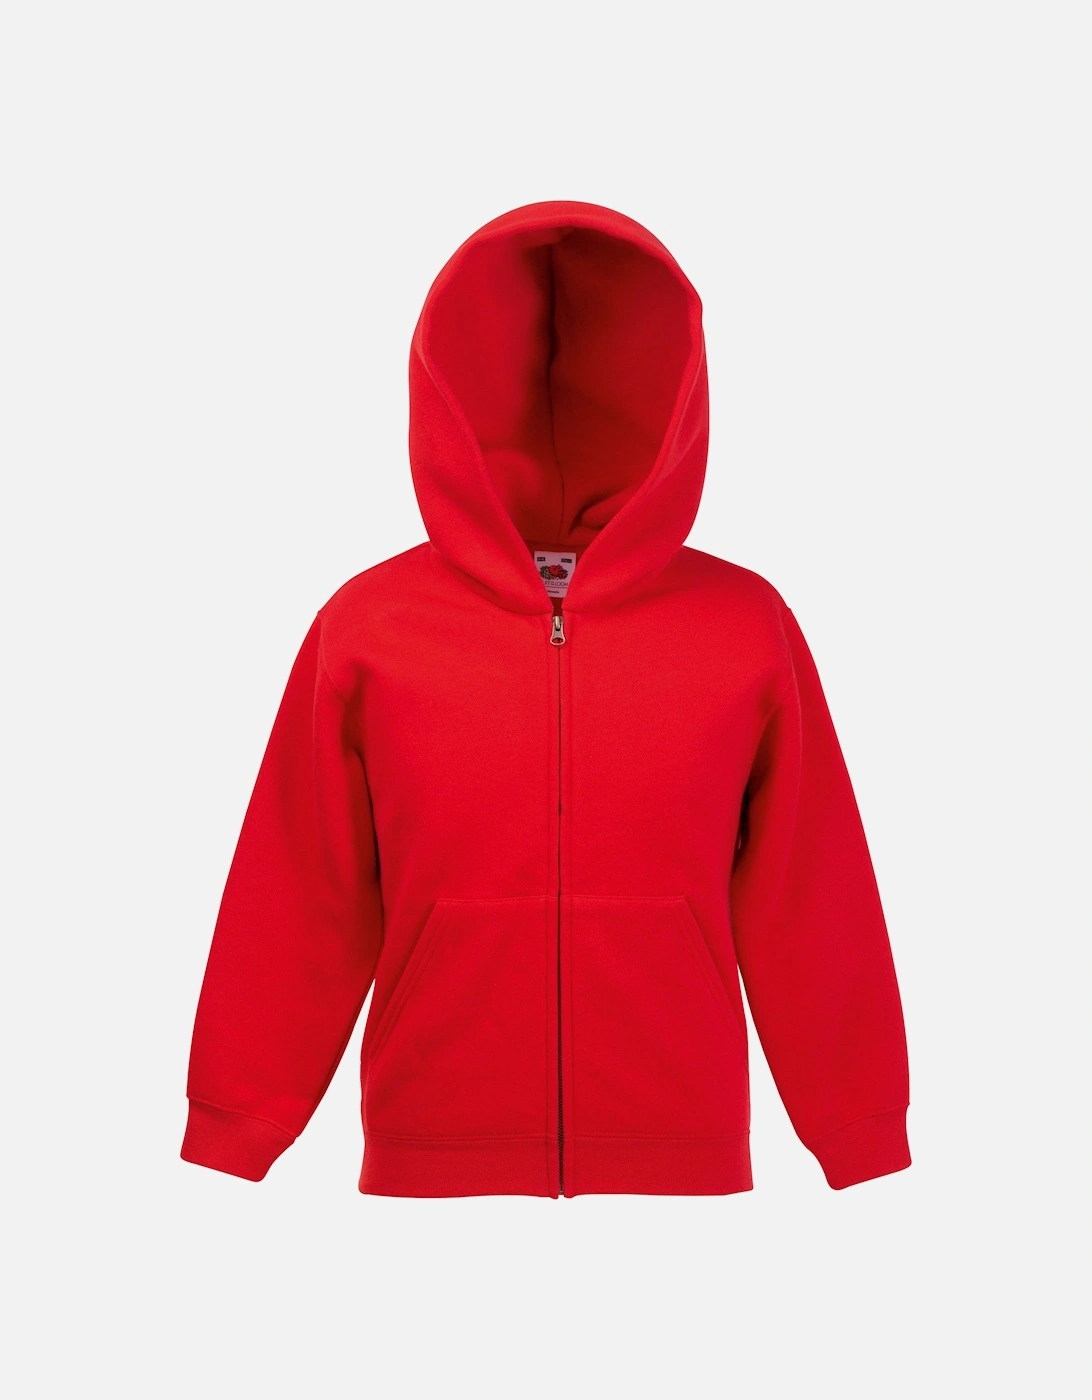 Kids Unisex Premium 70/30 Hooded Sweatshirt / Hoodie, 3 of 2